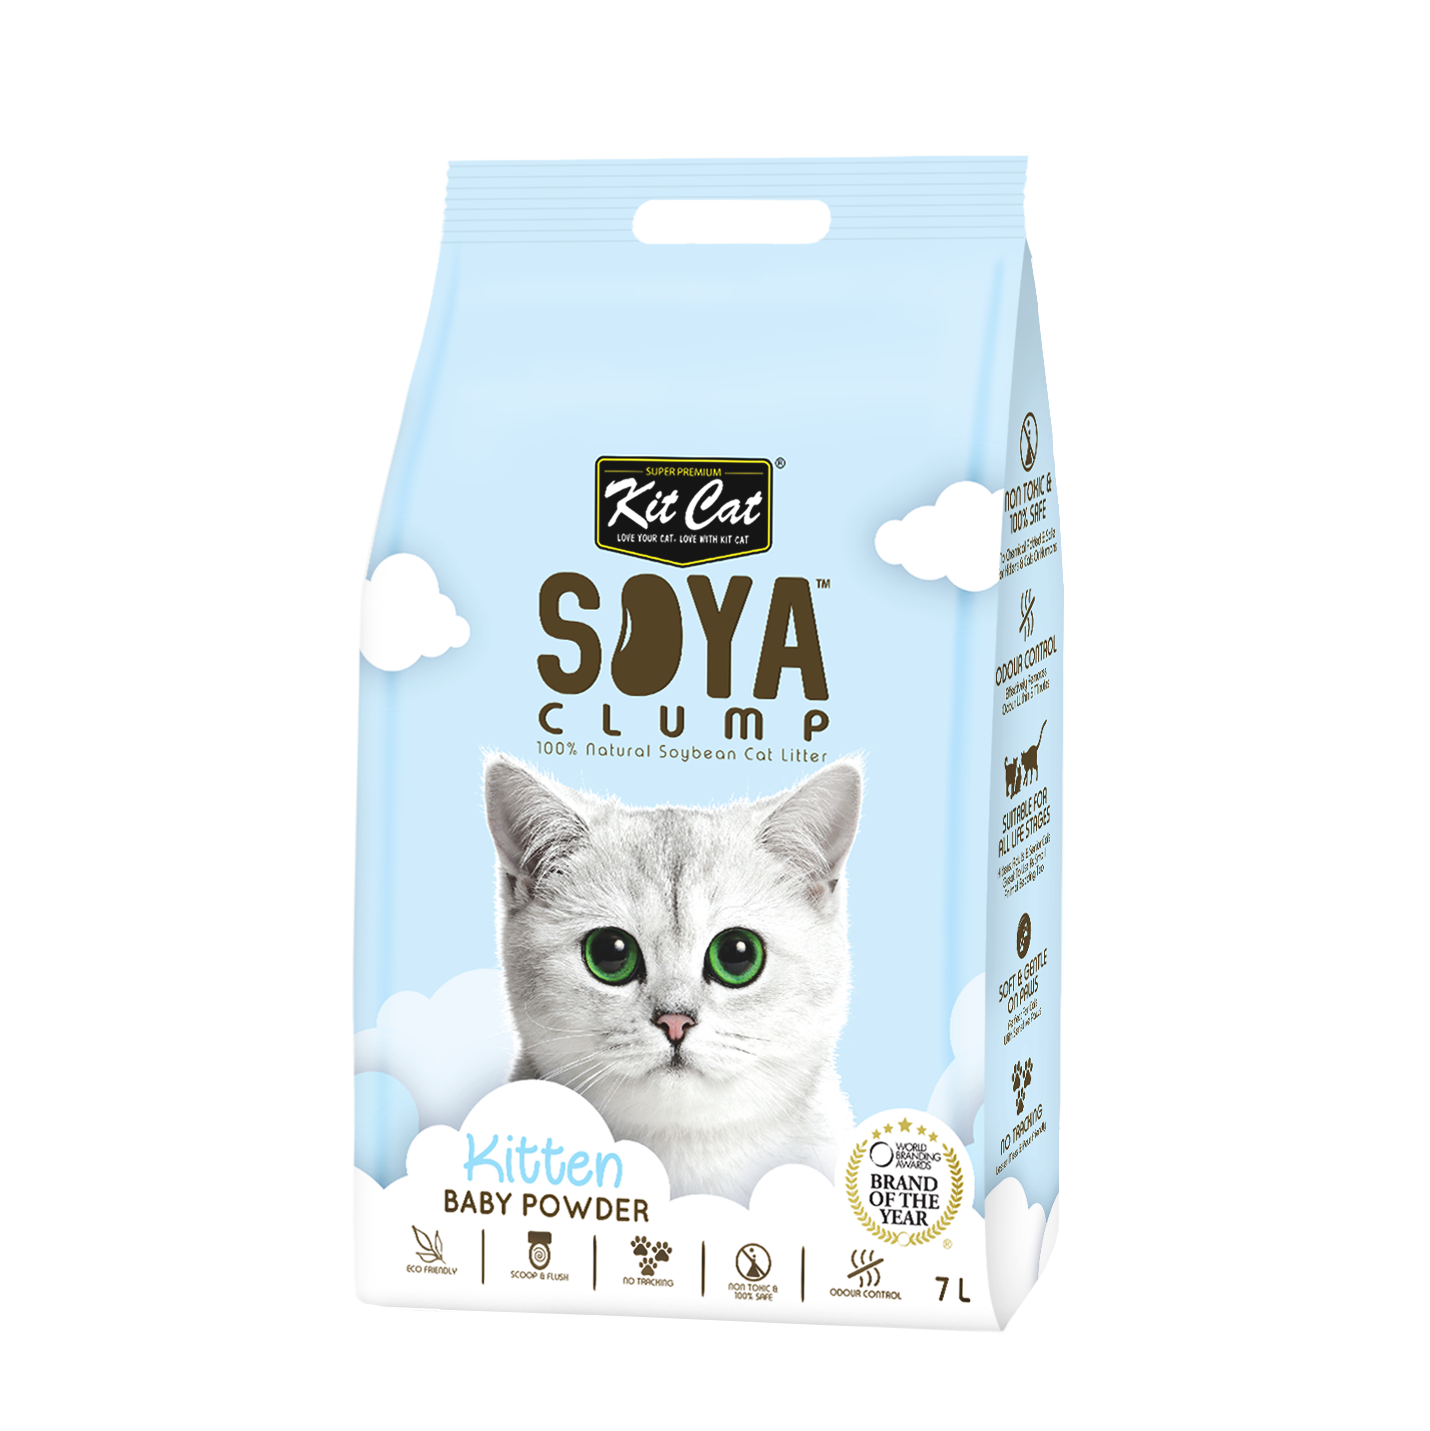 Kit Cat Soya Cat Litter - Baby Powder - 7 ltr (7867945681138)